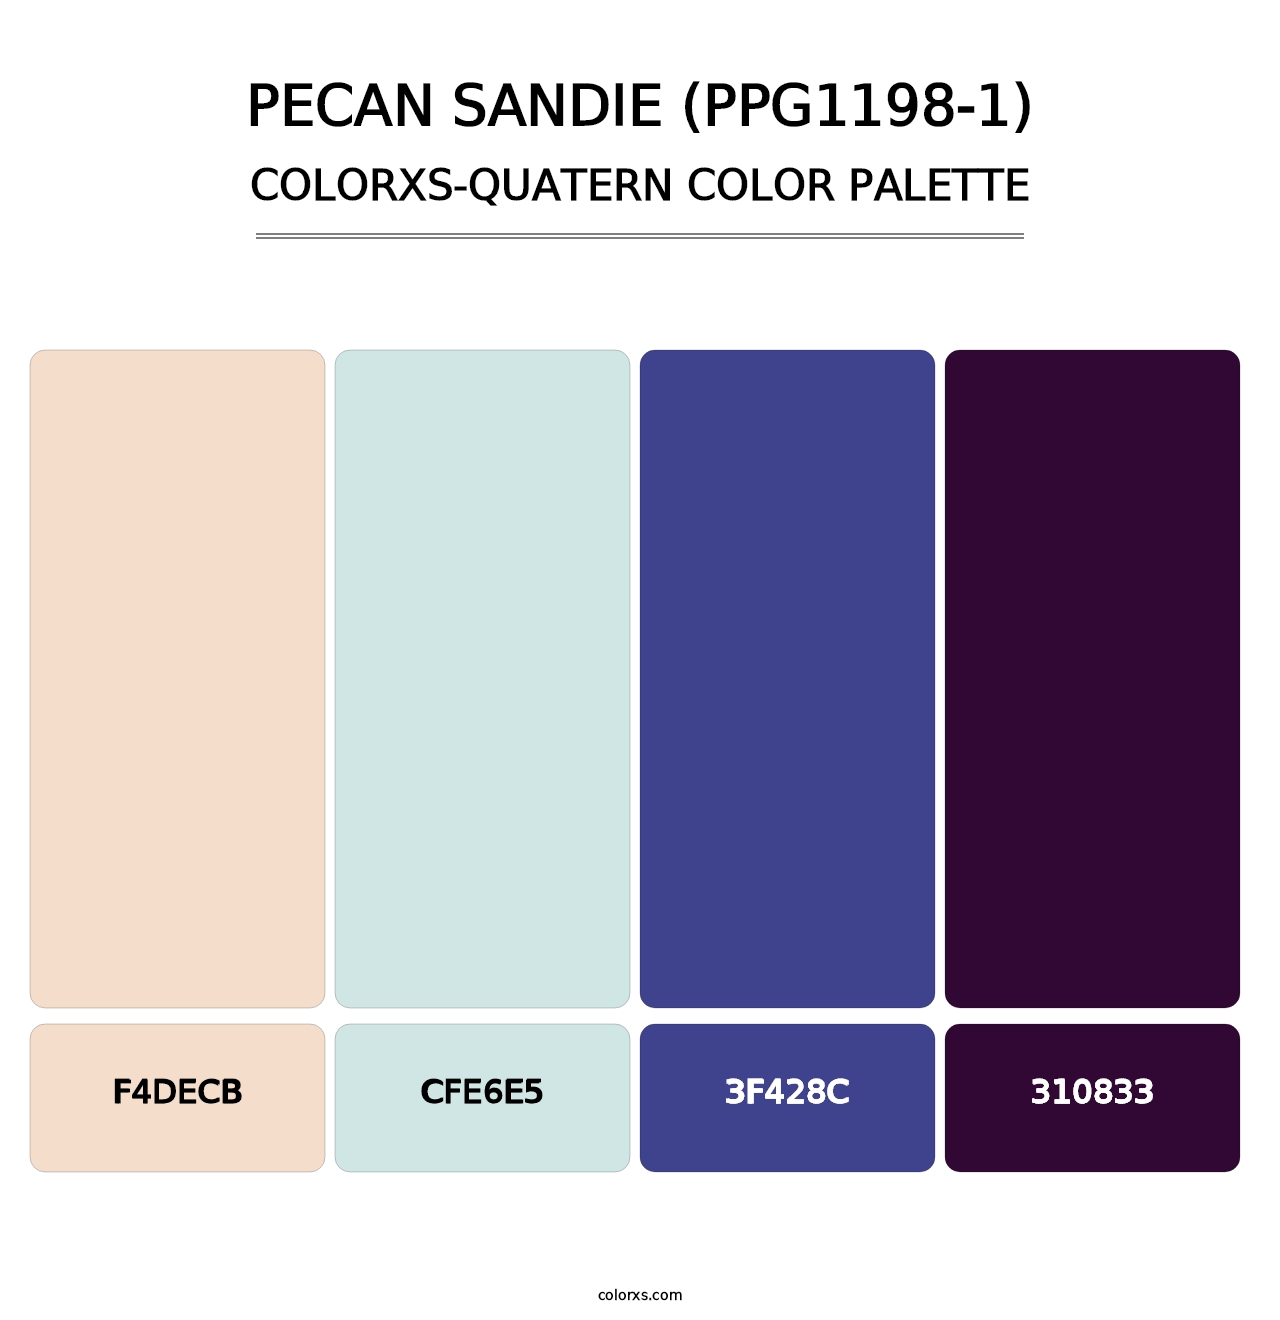 Pecan Sandie (PPG1198-1) - Colorxs Quatern Palette